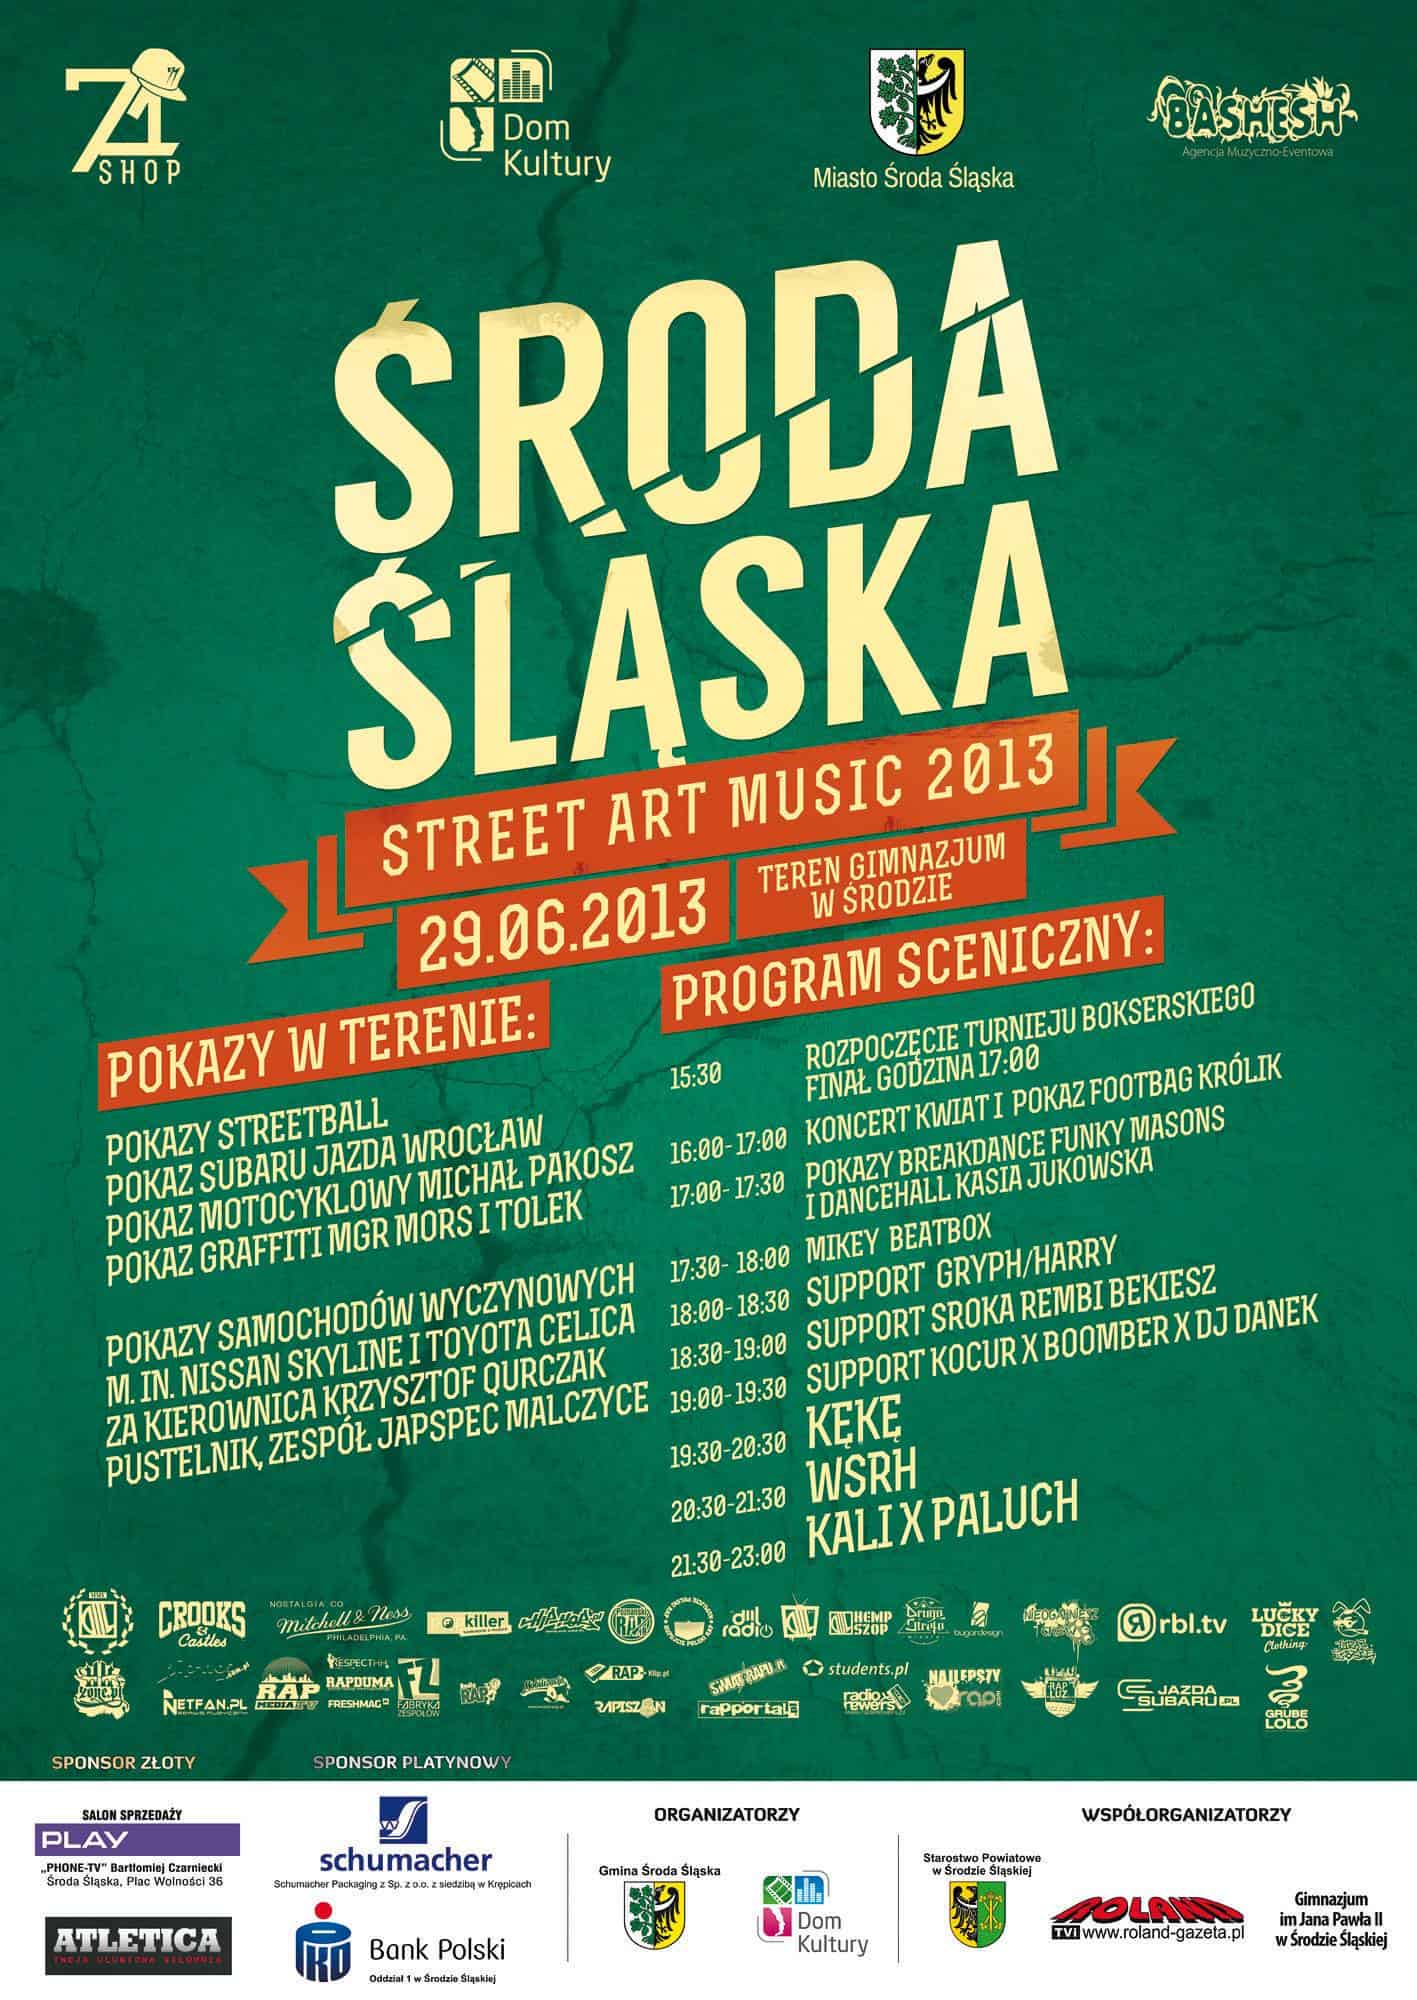 Street Art Music 2013 w Środzie Śląskiej już 29 czerwca  